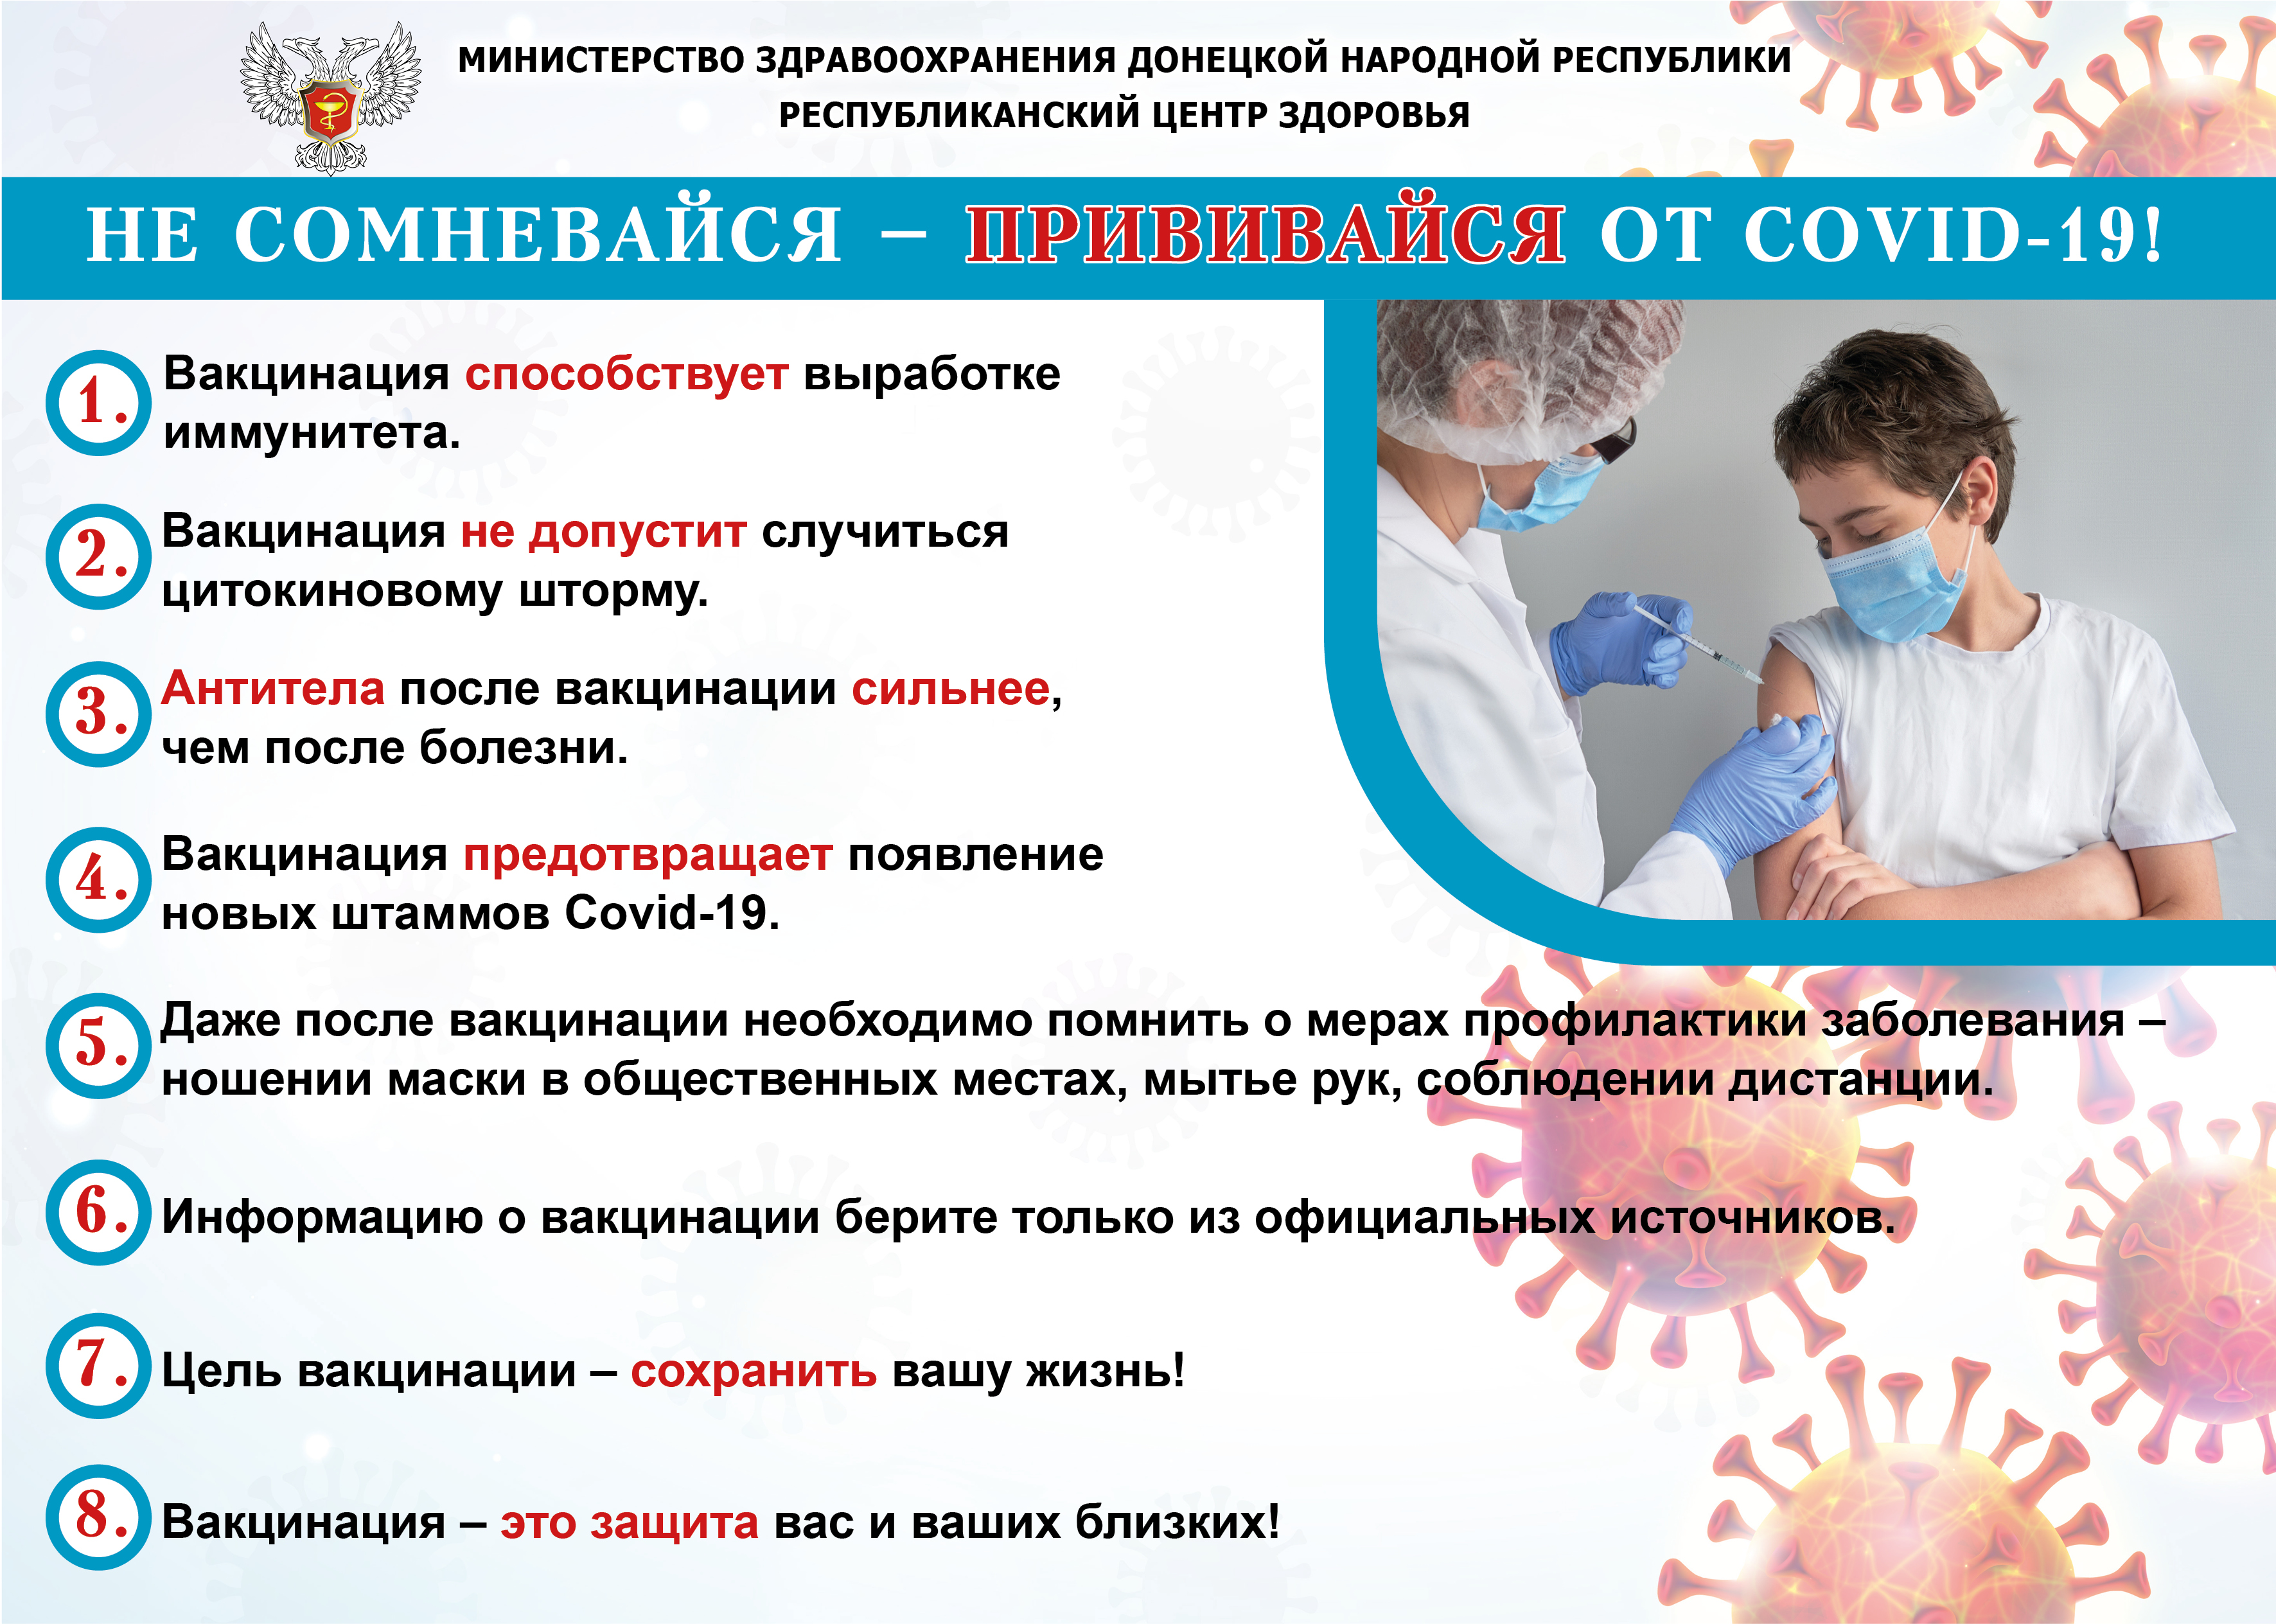 Основные меры профилактики вирусных инфекций